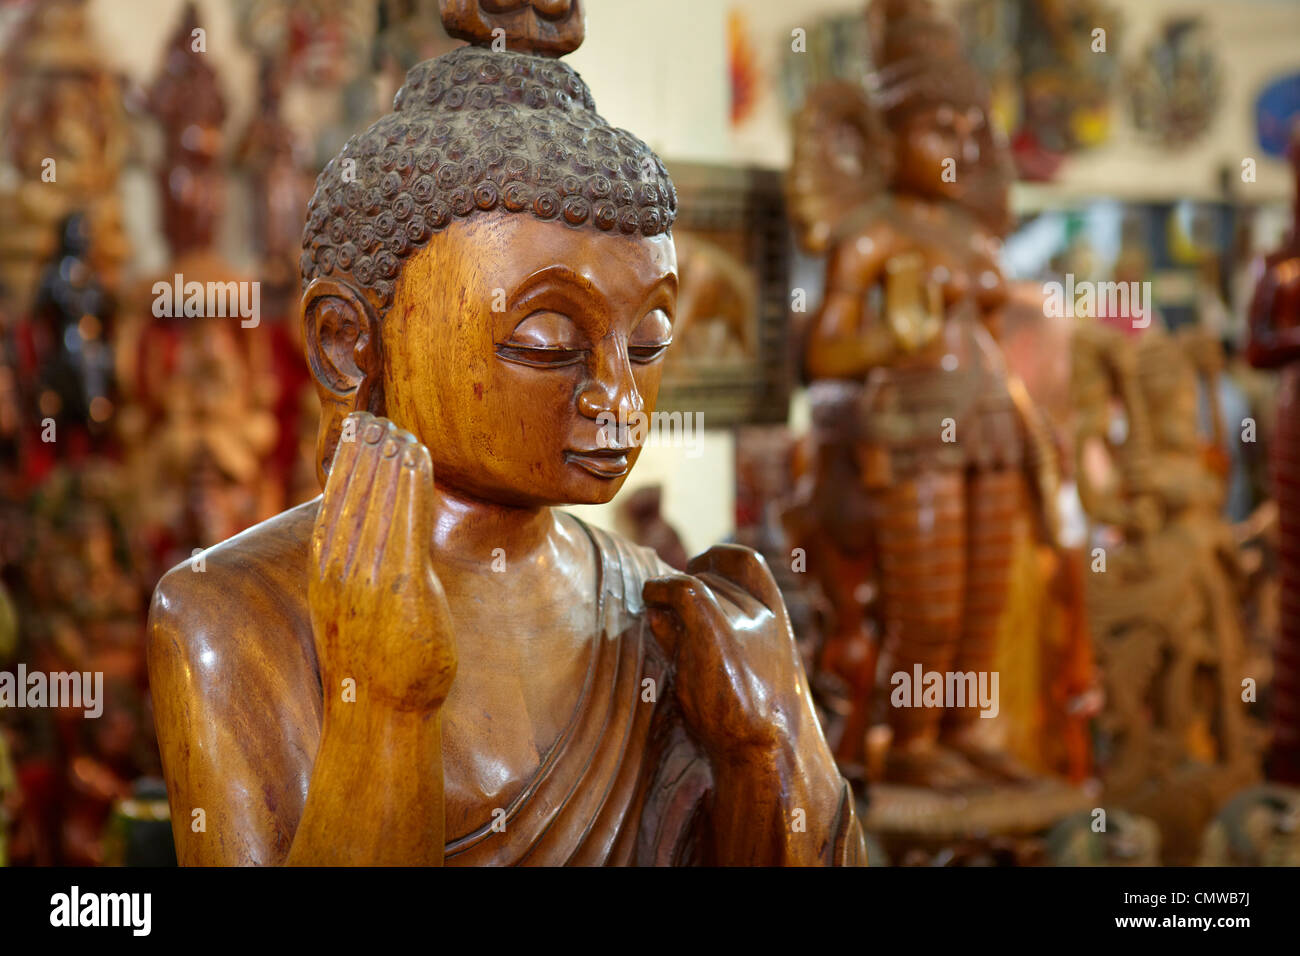 Sri Lanka - traditionelle Holzschnitzerei, Shop mit Souvenirs, Detail der Buddha Statue Stockfoto